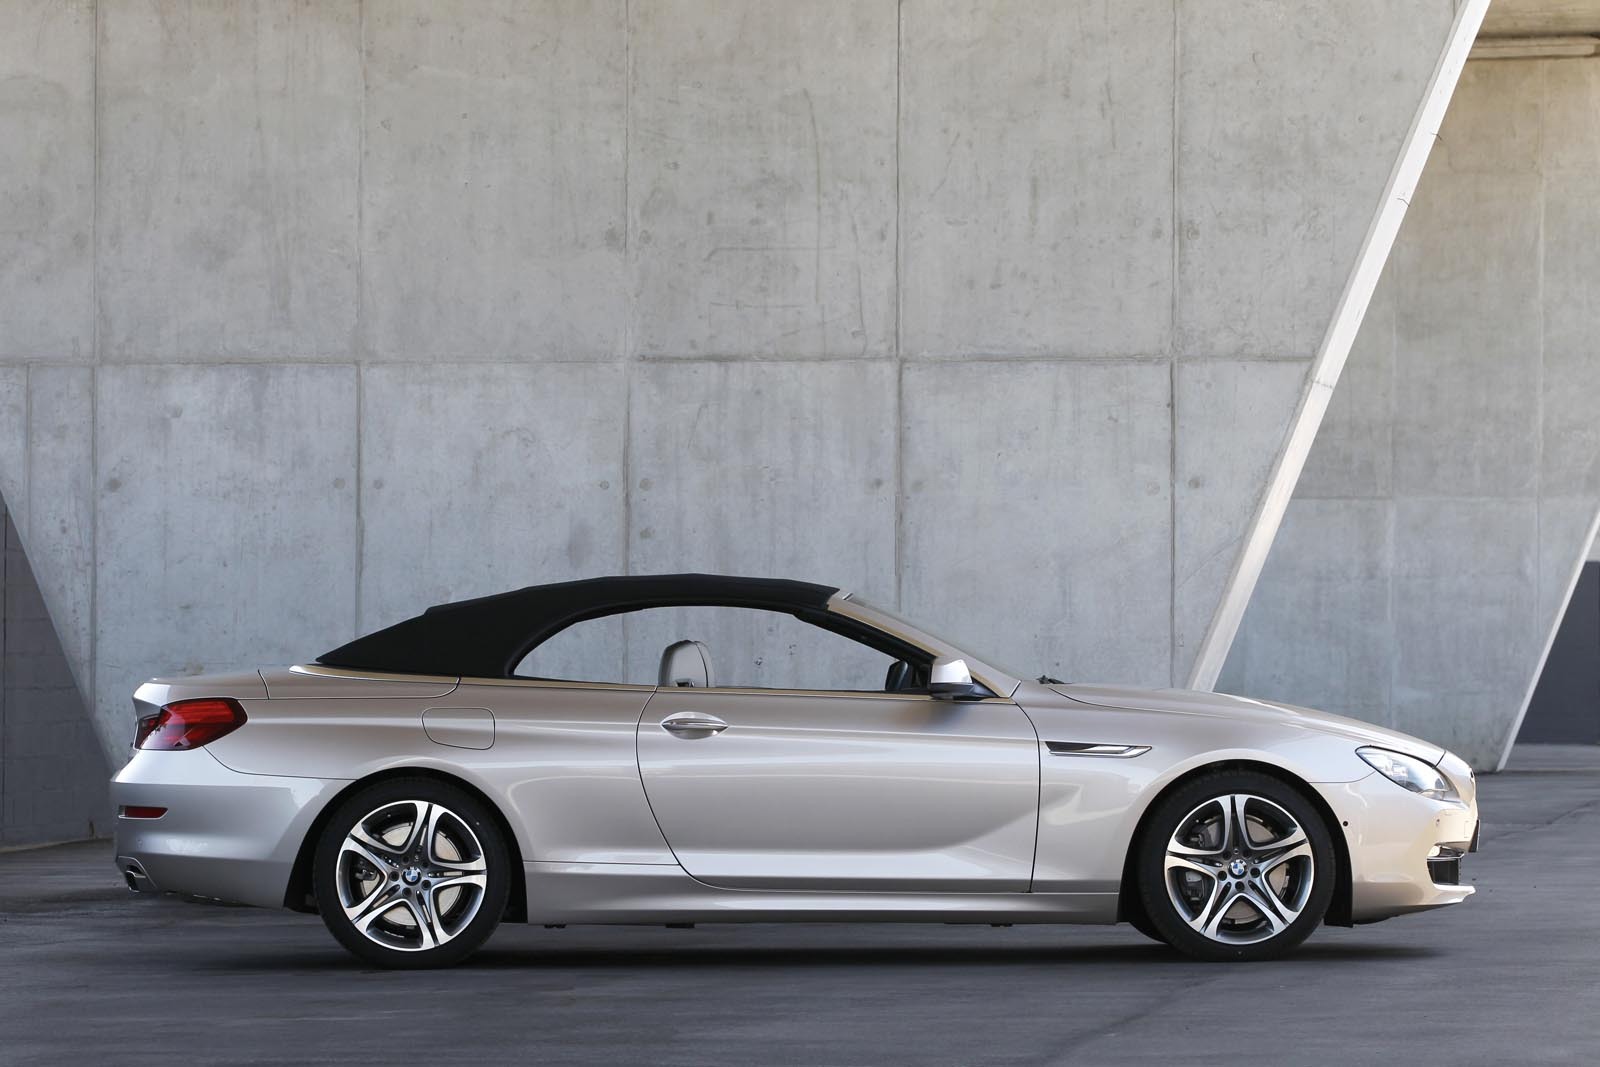 În România, preţul unui BMW Seria 6 Convertible, în versiune 650i, va ajunge la 130.000 euro